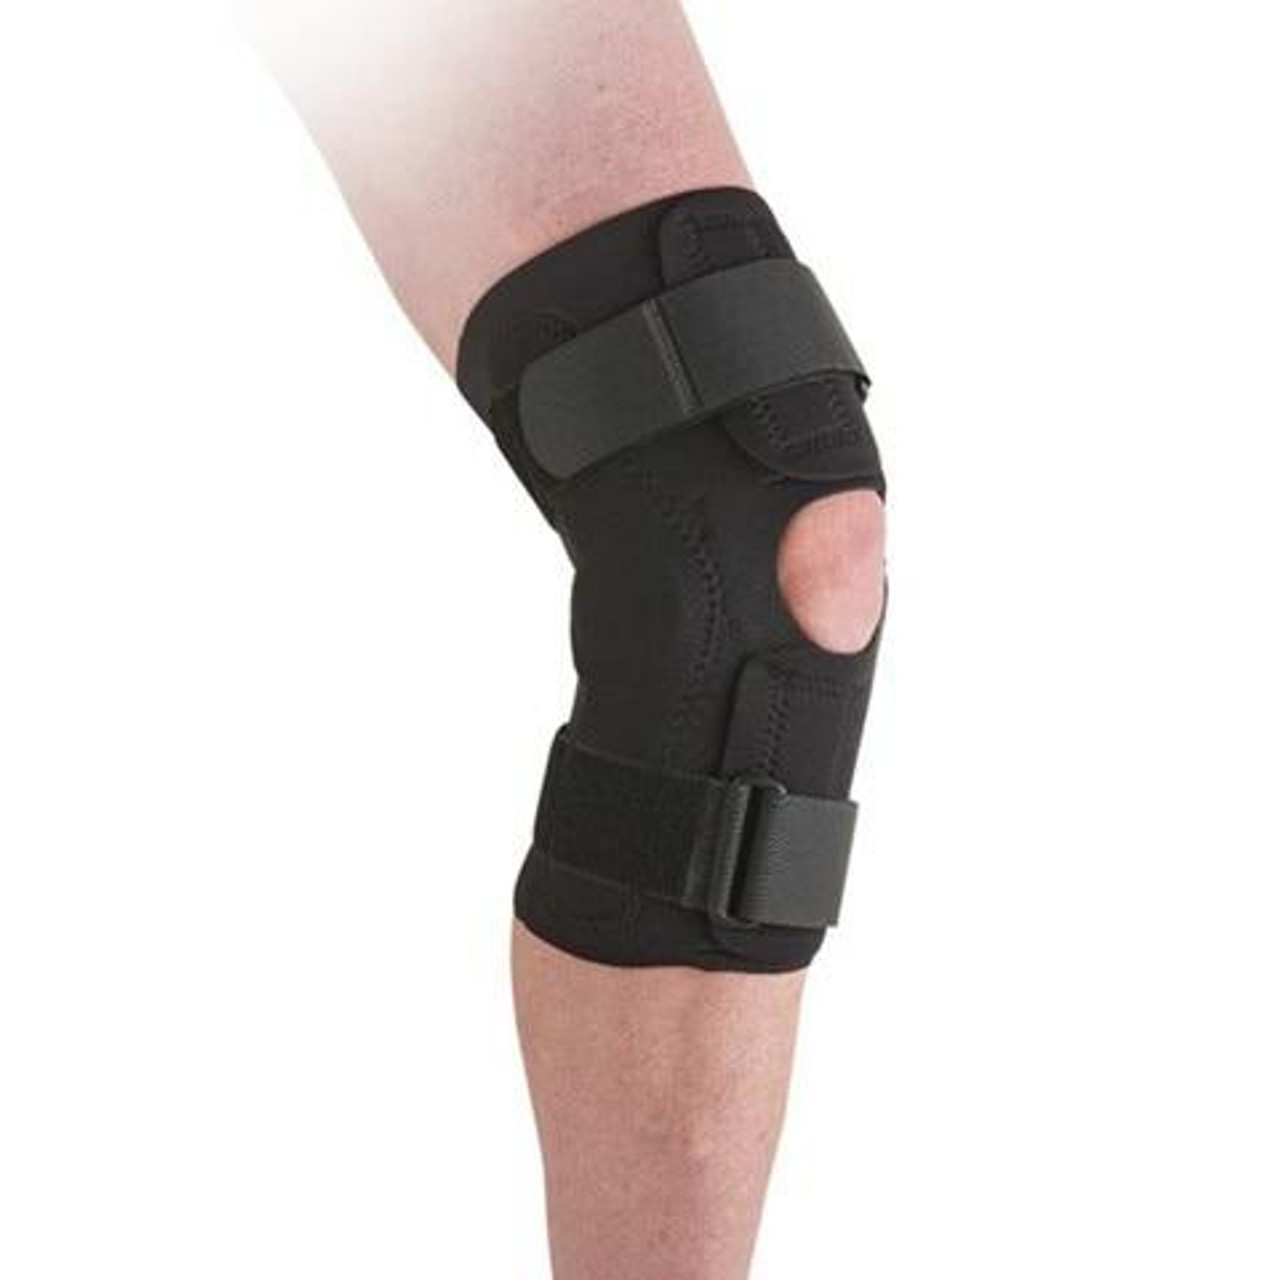 What Size Knee Brace Do I Need? Tips on Sizing a Donjoy or Breg Knee Brace  - Ortho Bracing